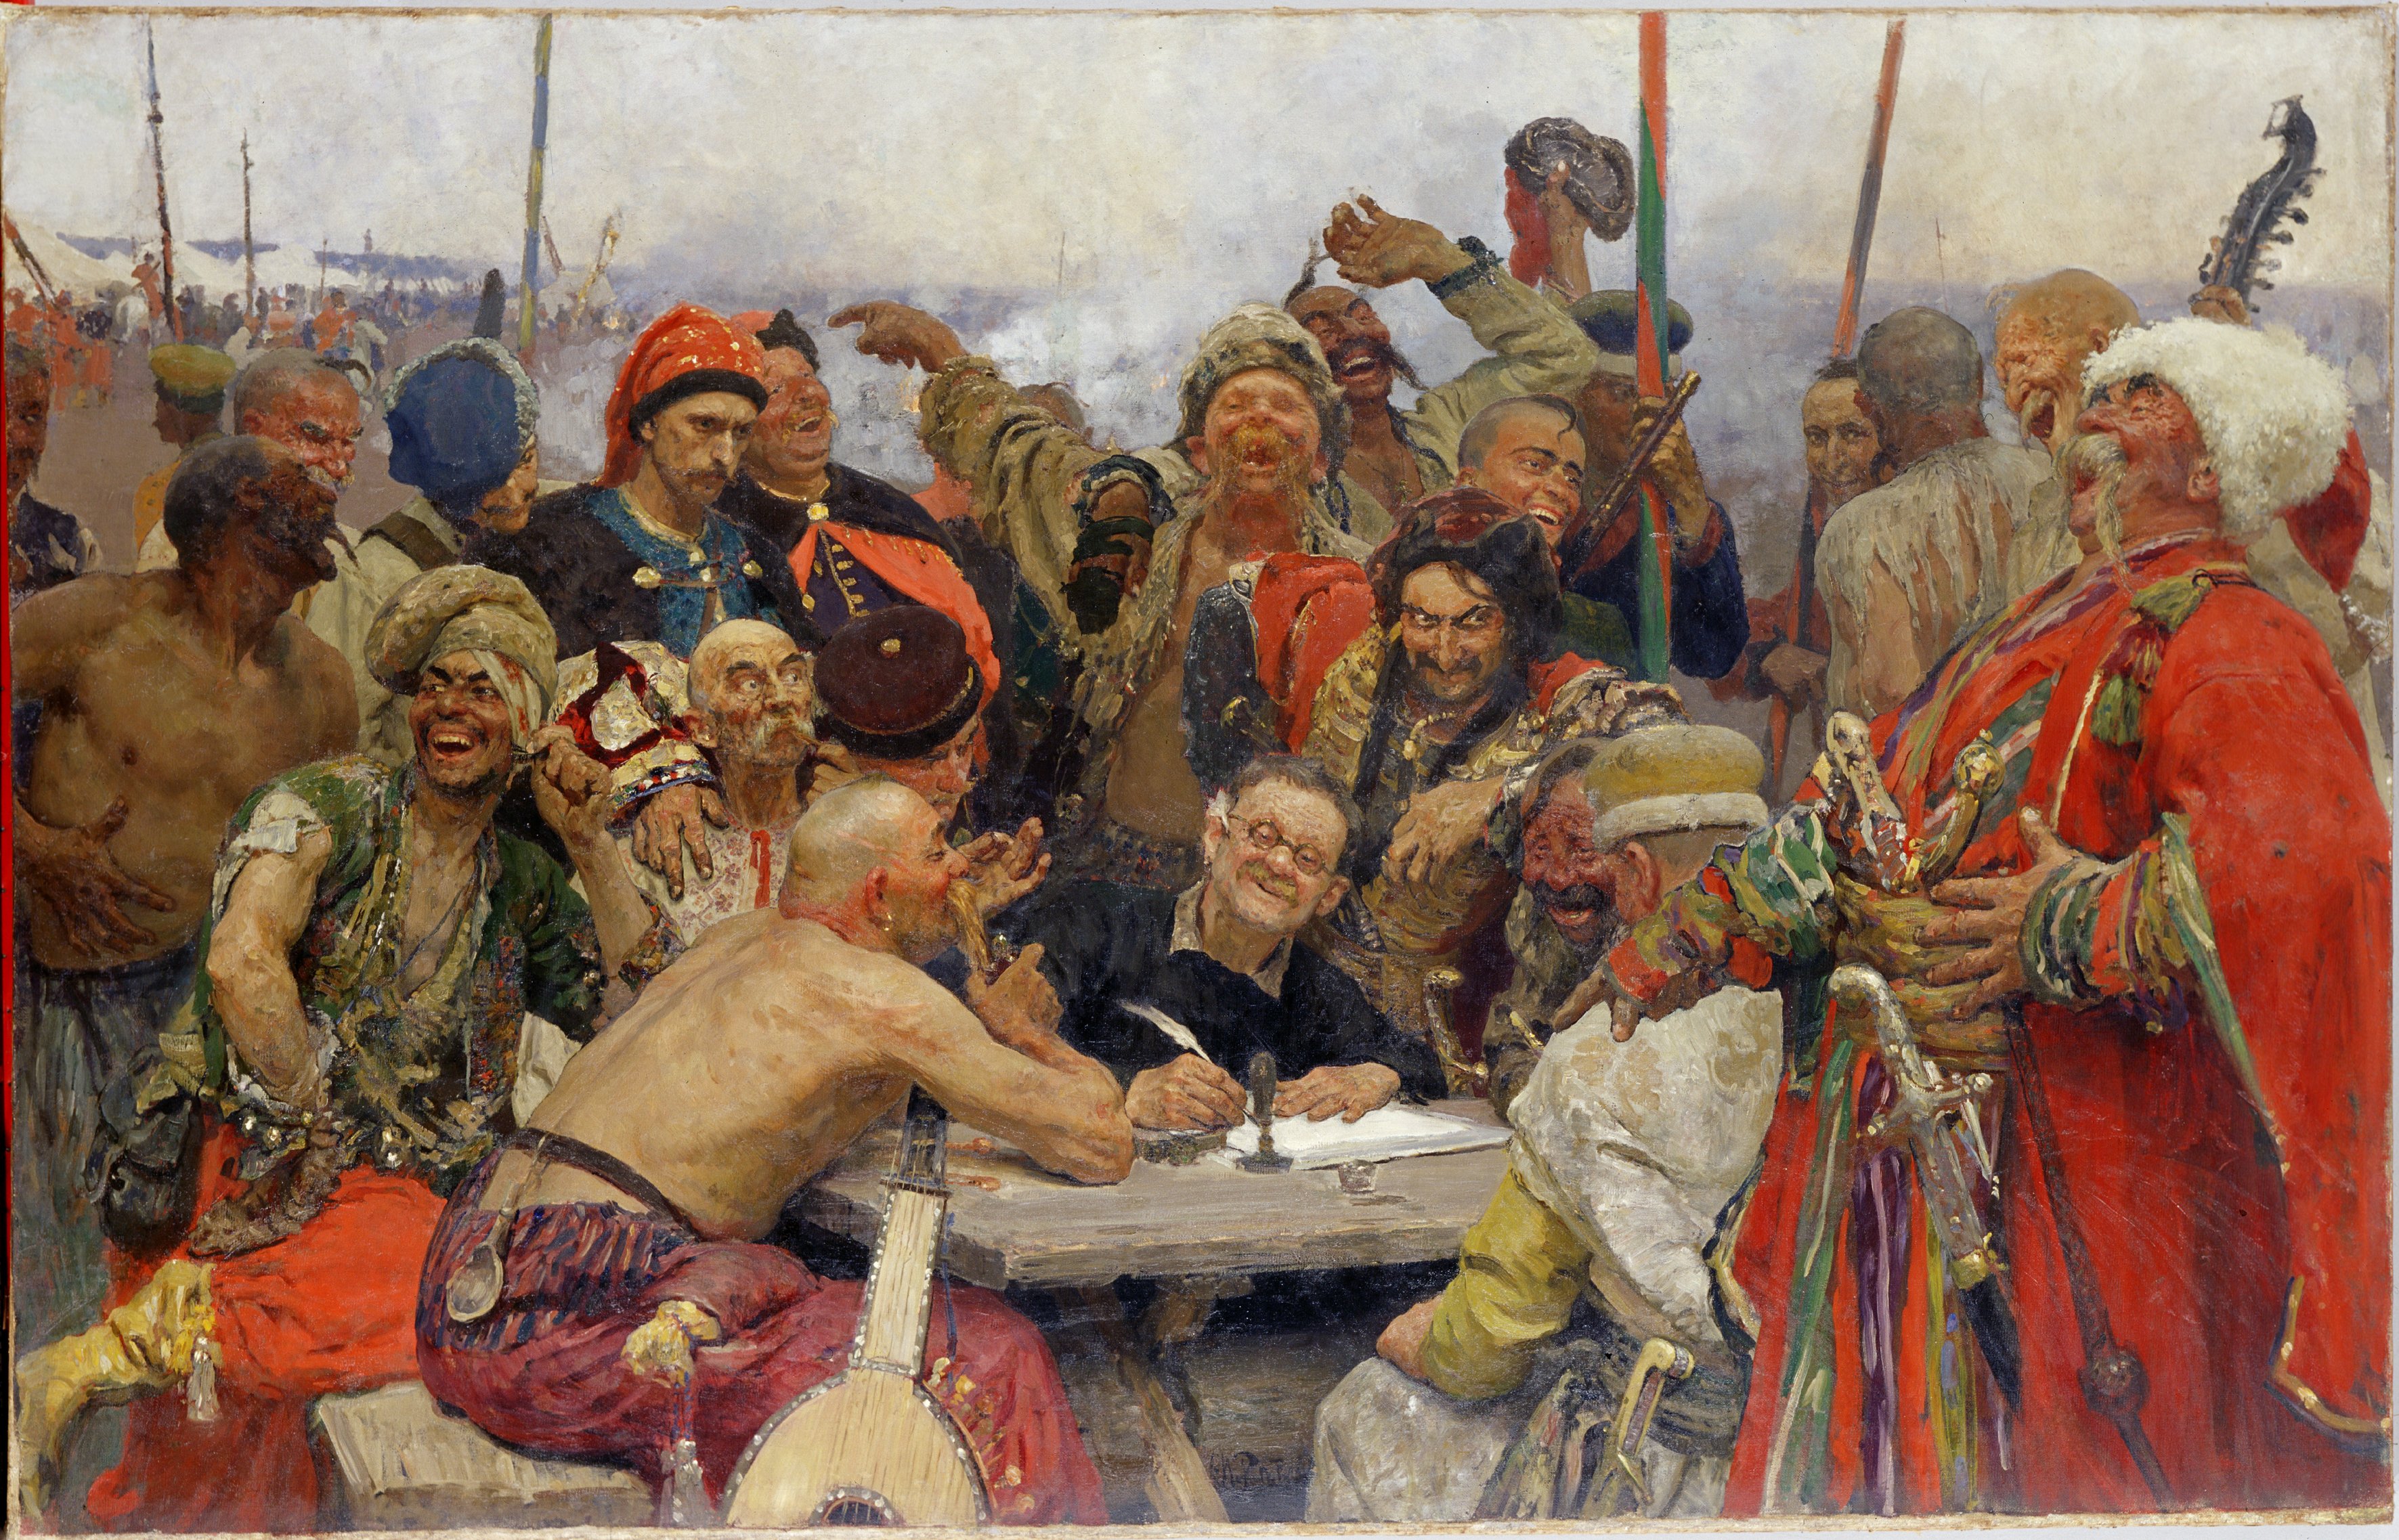 Запорожці пишуть листа турецькому султанові. 1889-1896 (Харківський художній музей CC BY-NC-ND)